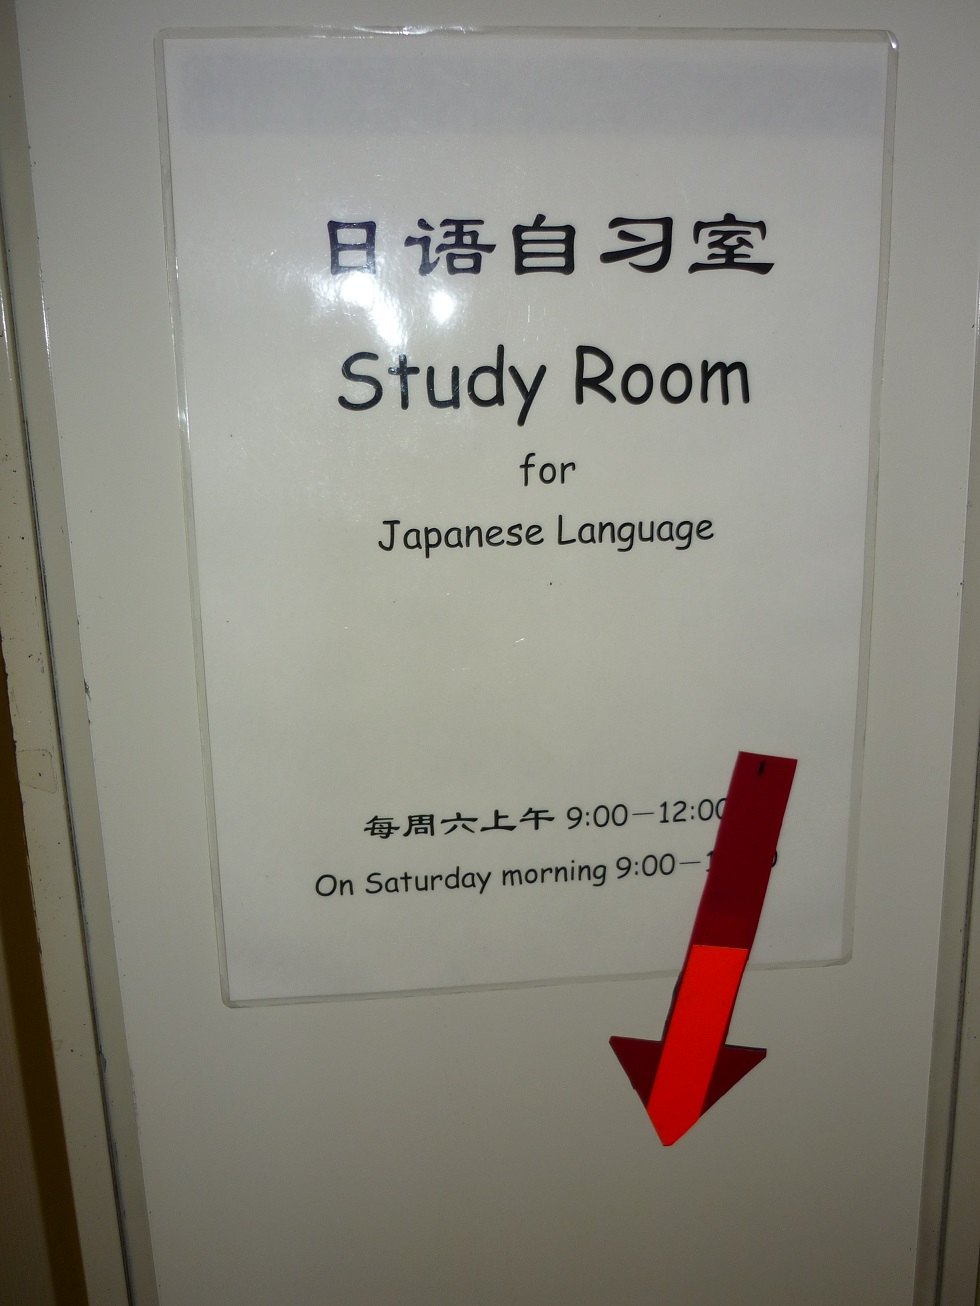 地域日本語教育は おもしろい 東広島の 日本語自習学習サポート で考えたこと アクラス日本語教育研究所